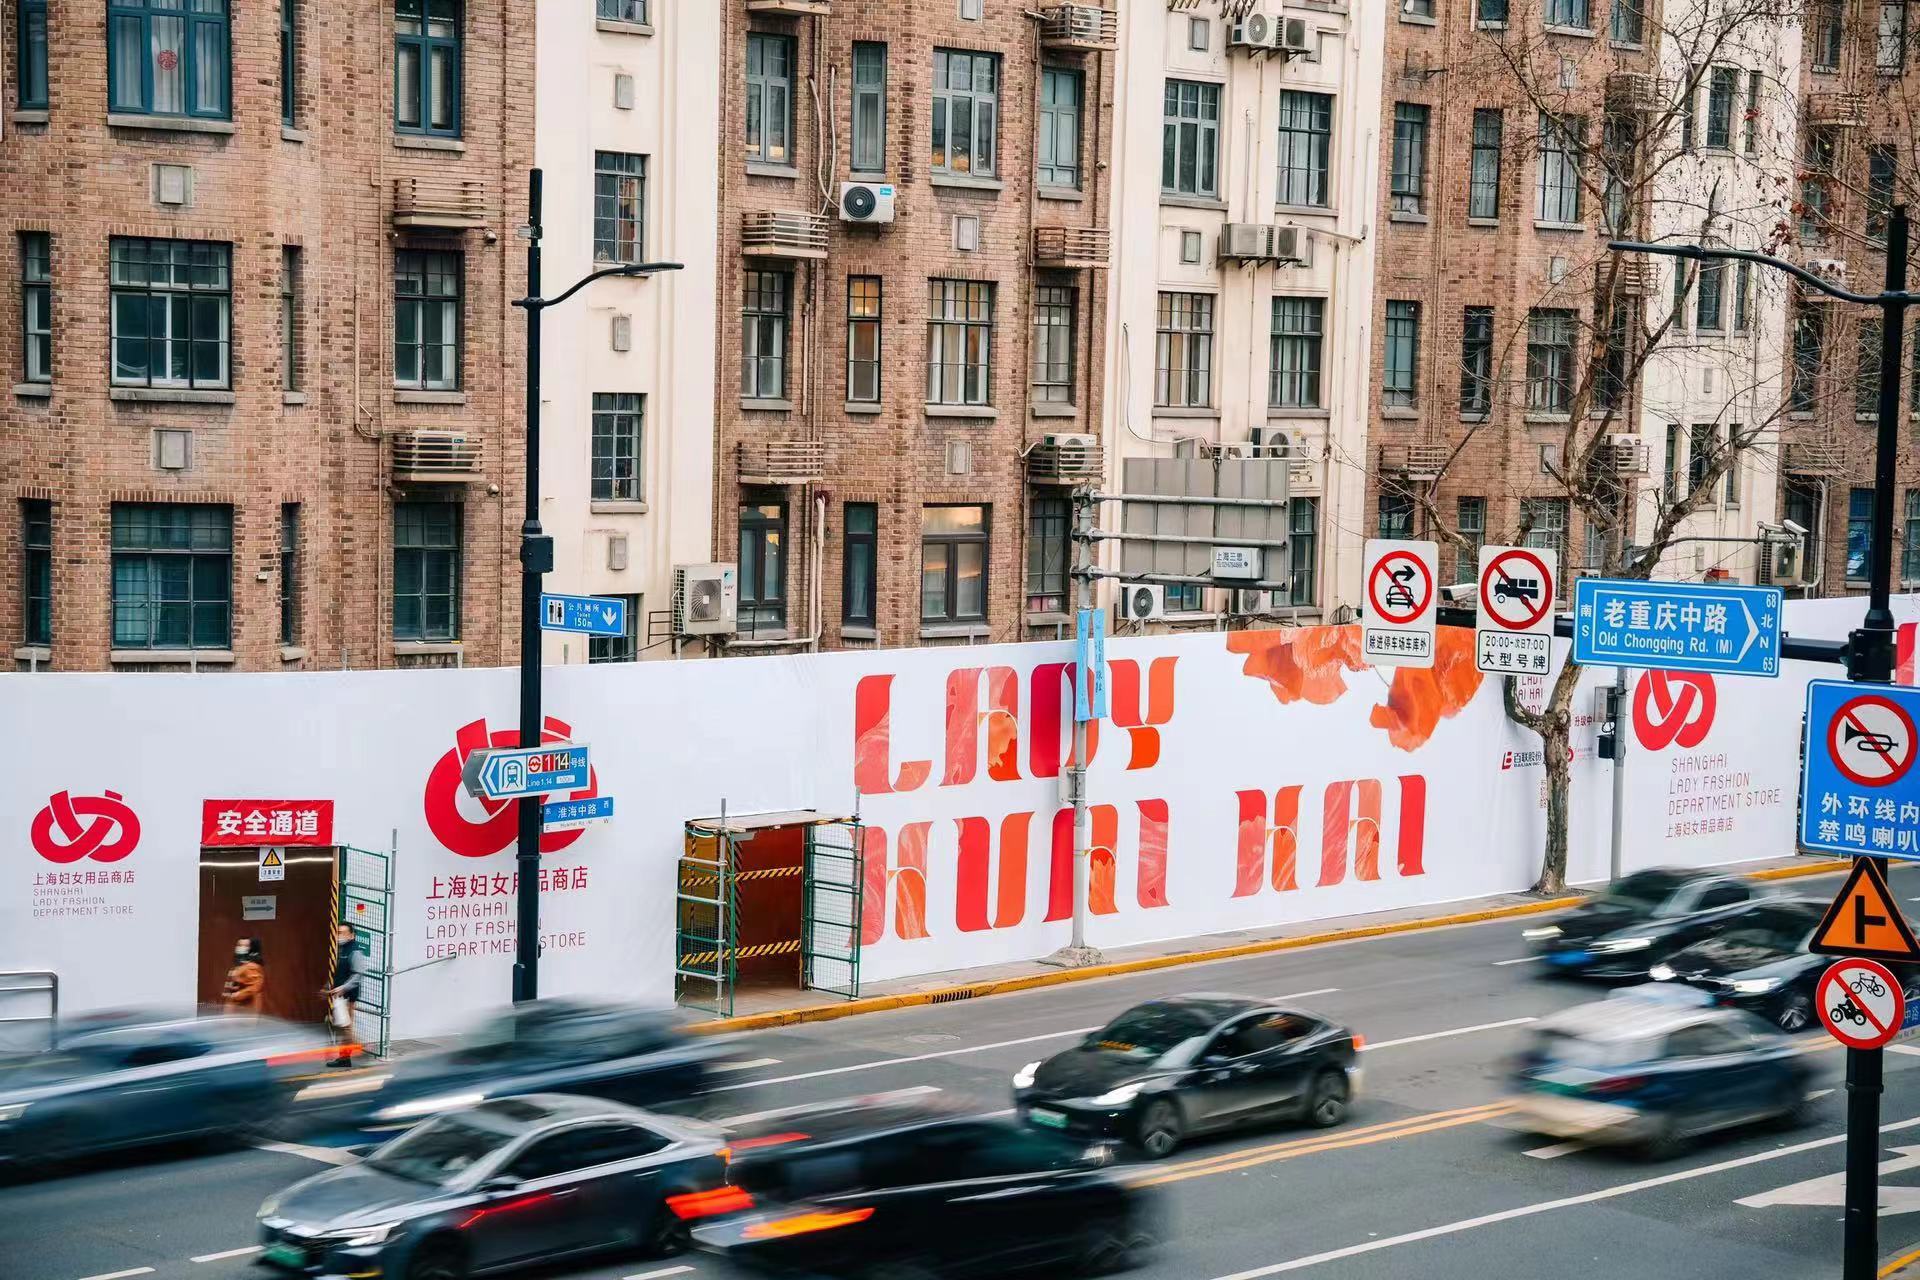 百联股份首次推出的女性社群品牌“LADY淮海”，图为街景。百联股份供图